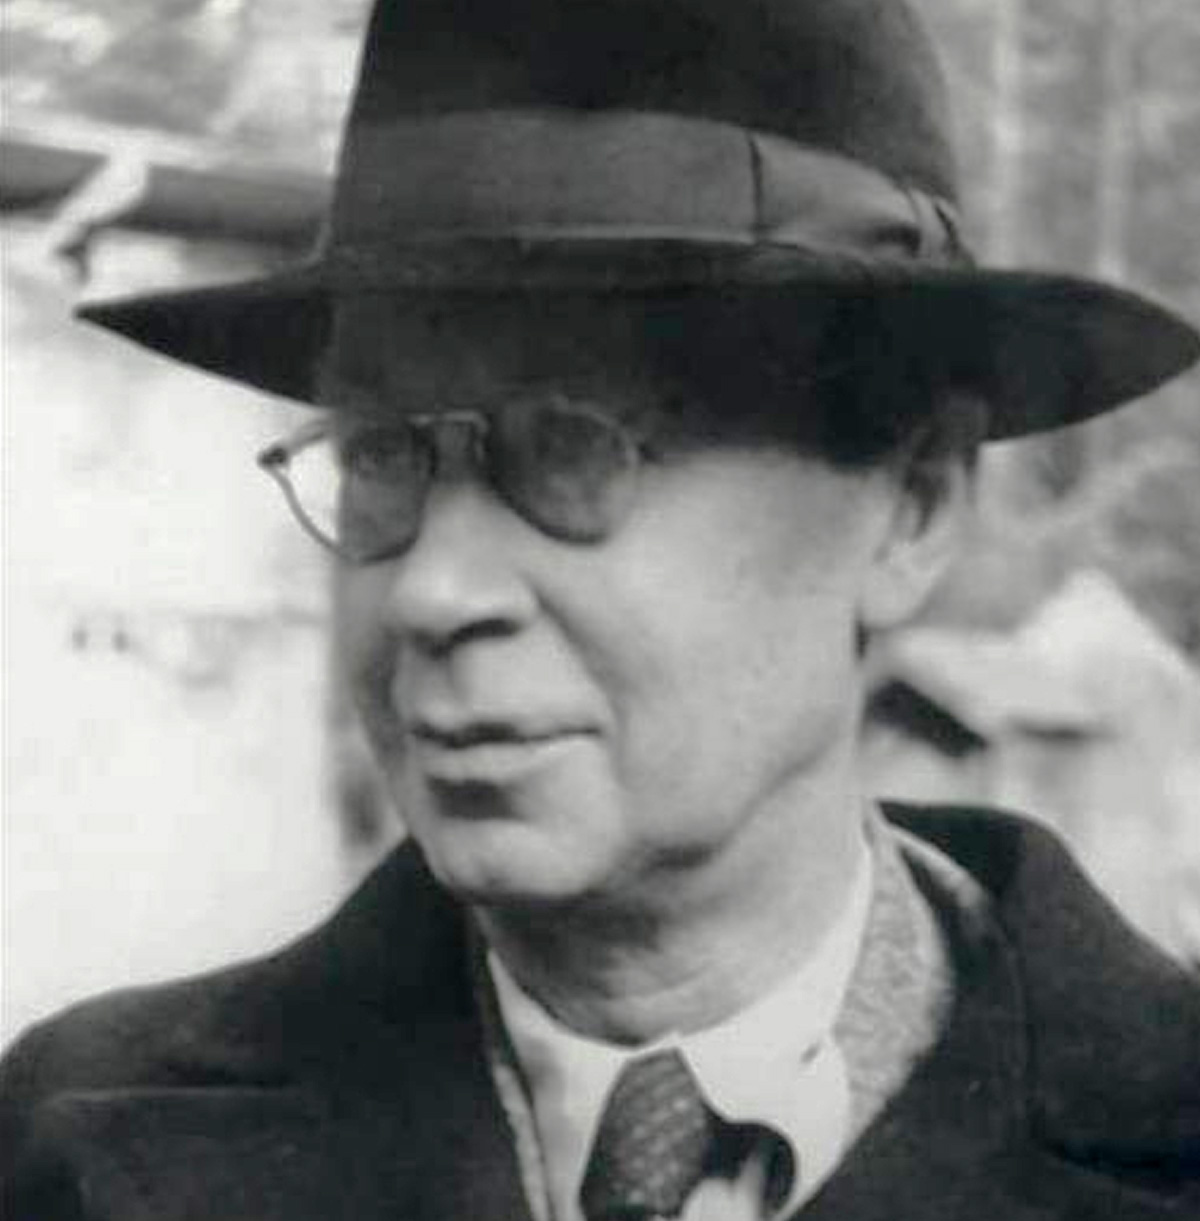 Sergei Prokofiev in hat